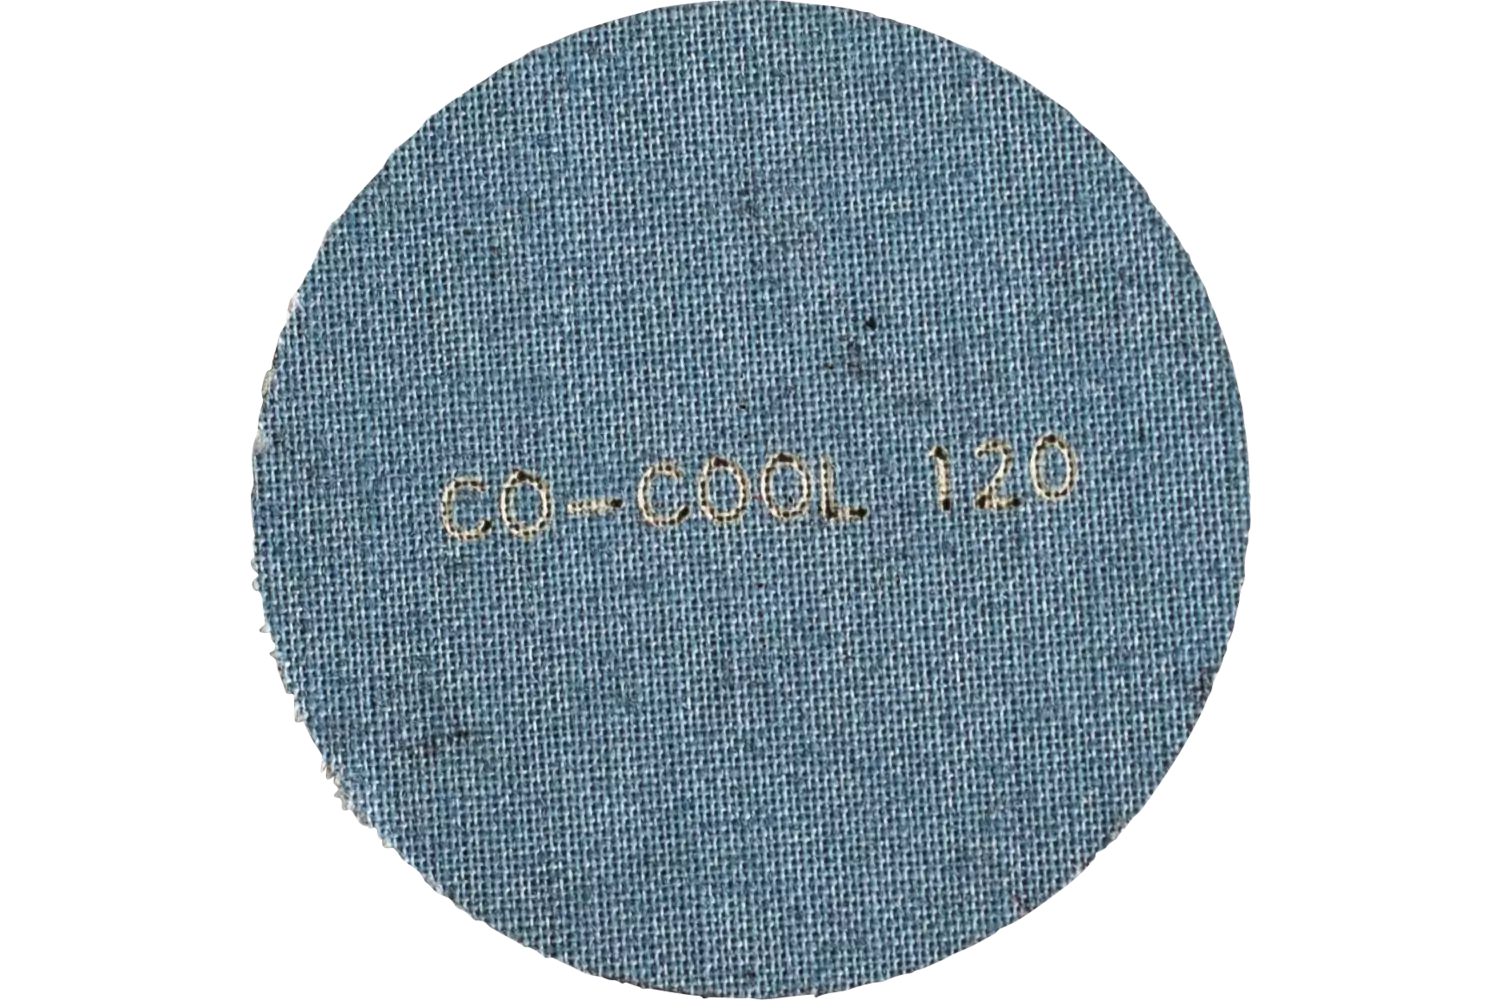 COMBIDISC Keramikkorn Mini-Fiberscheibe CDFR Ø 50mm CO-COOL120 für rückseitiges Schleifen 3